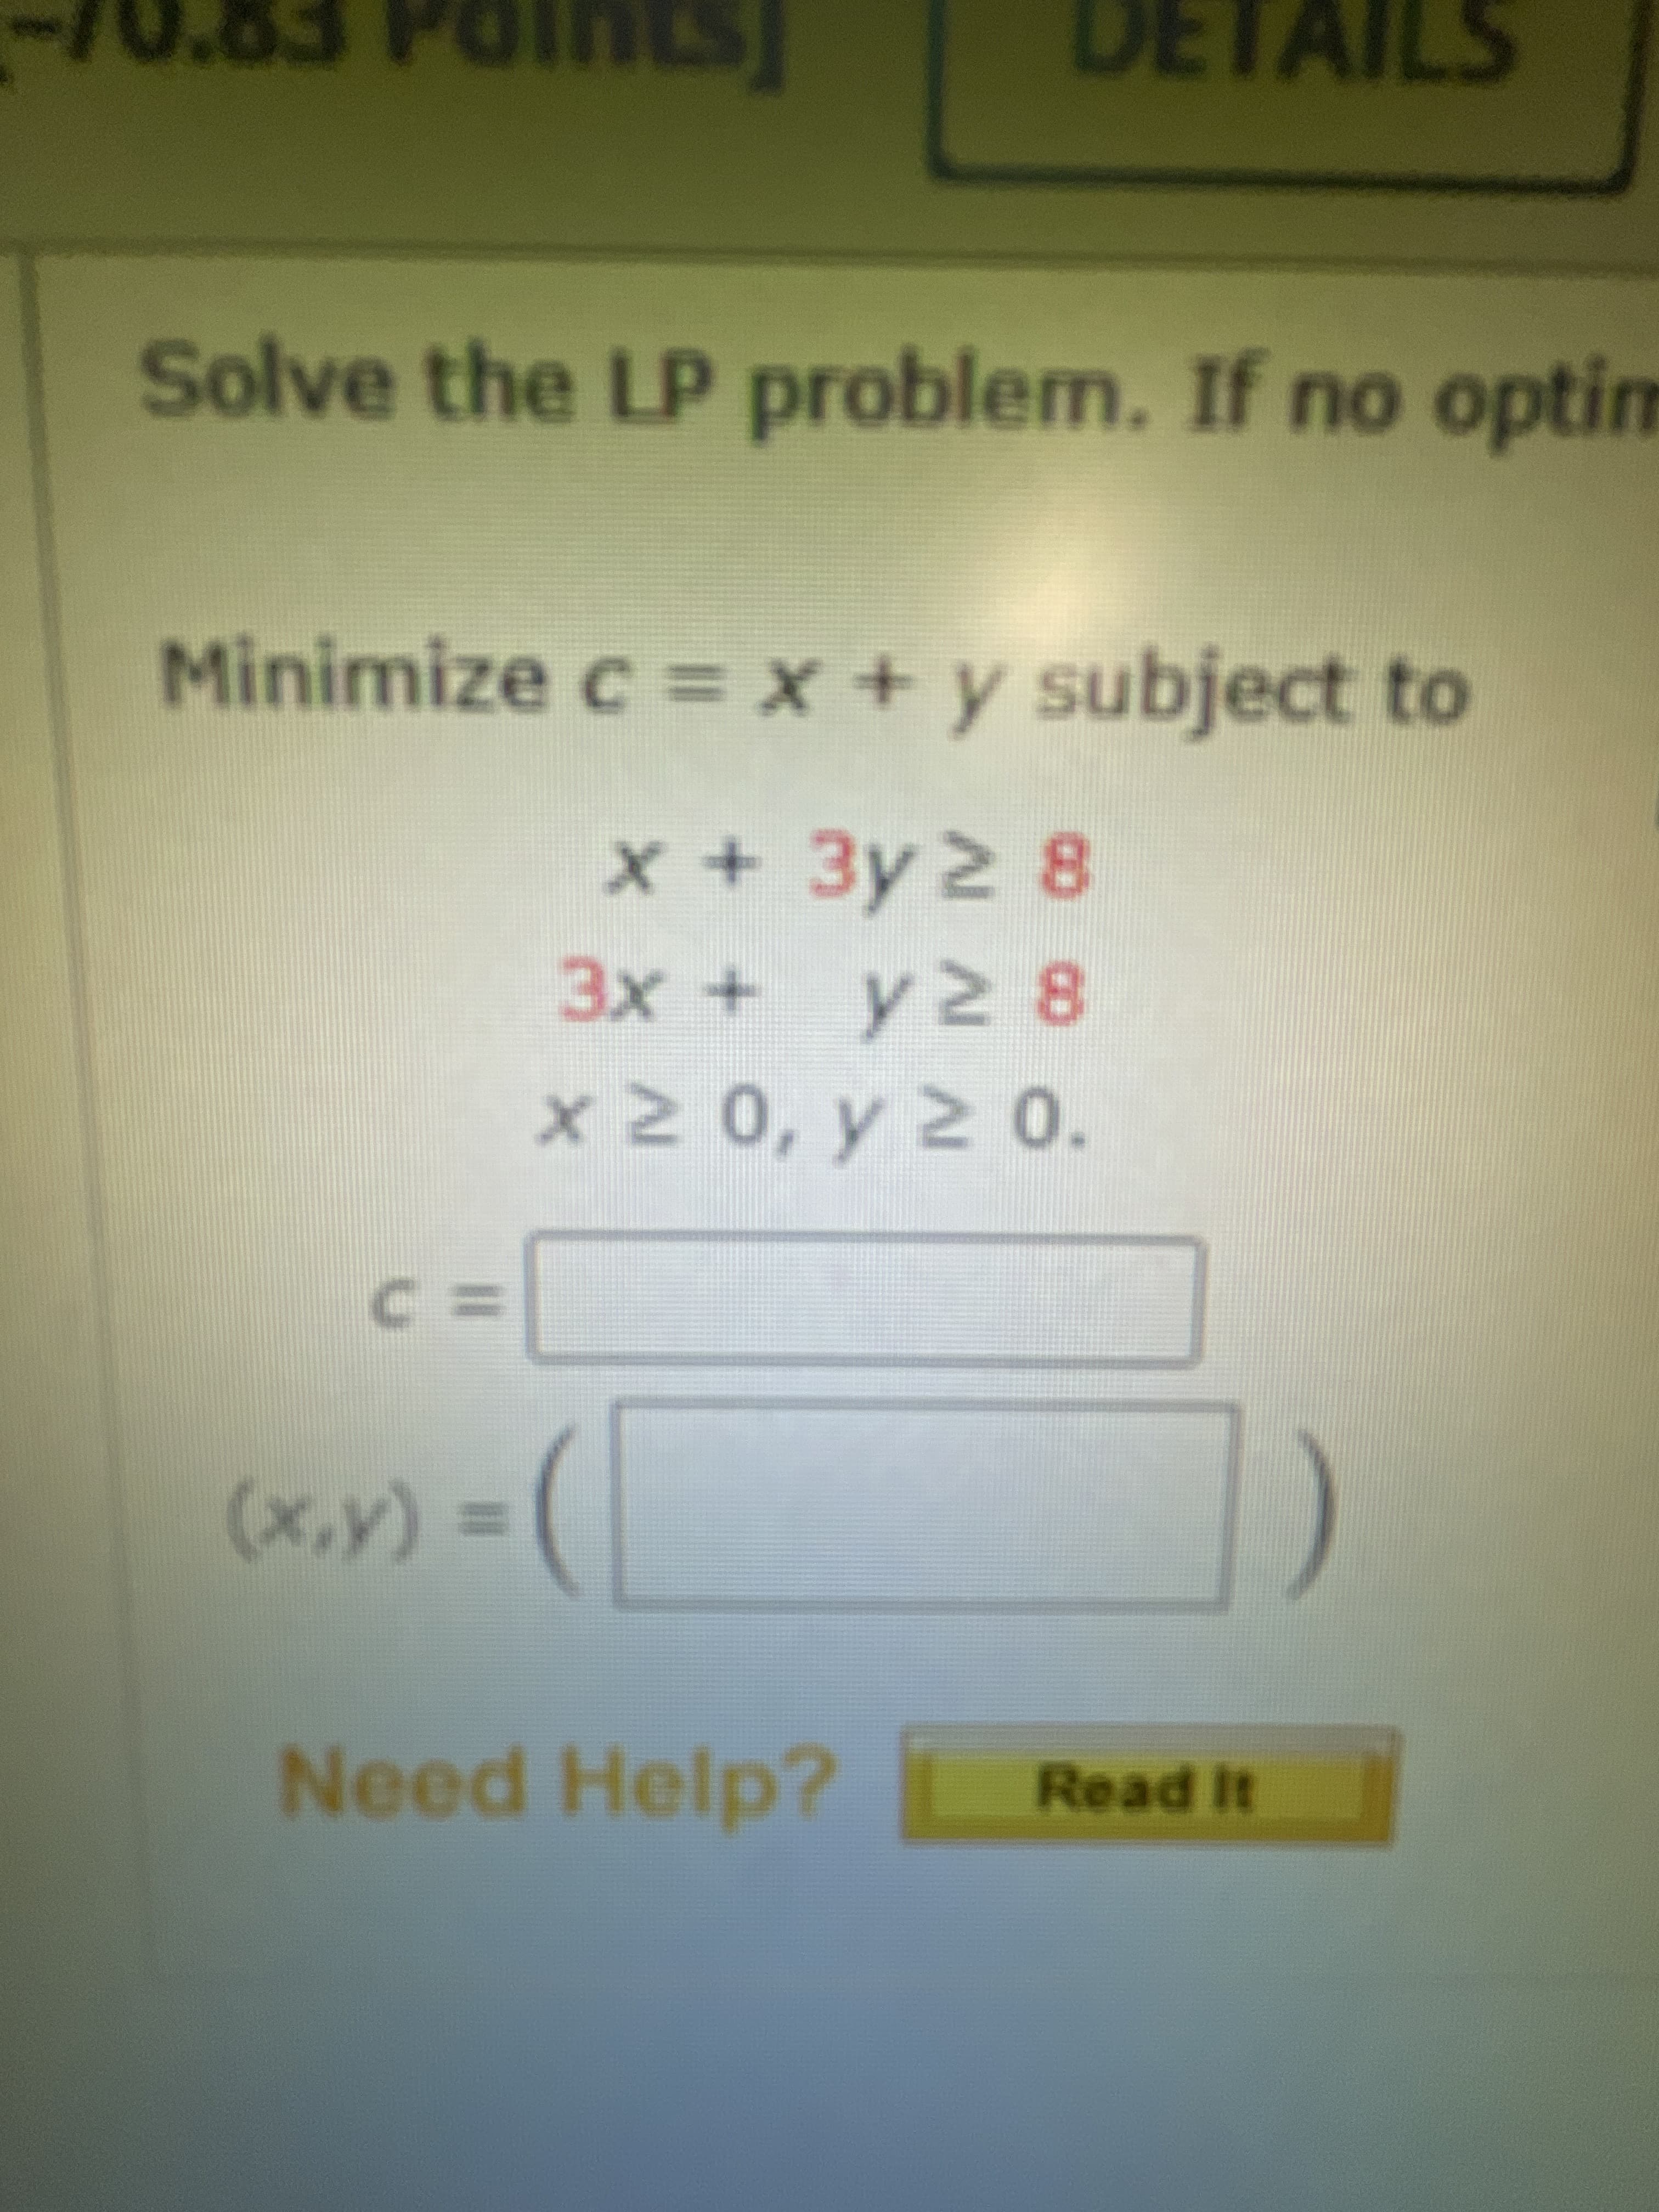 Solve the LP problem. If no optim
Minimize c = x + y subject to
x+3y2 8
3x + y2 8
x2 0, y 2 0.
3つ
= (A'x)
Need Help?
